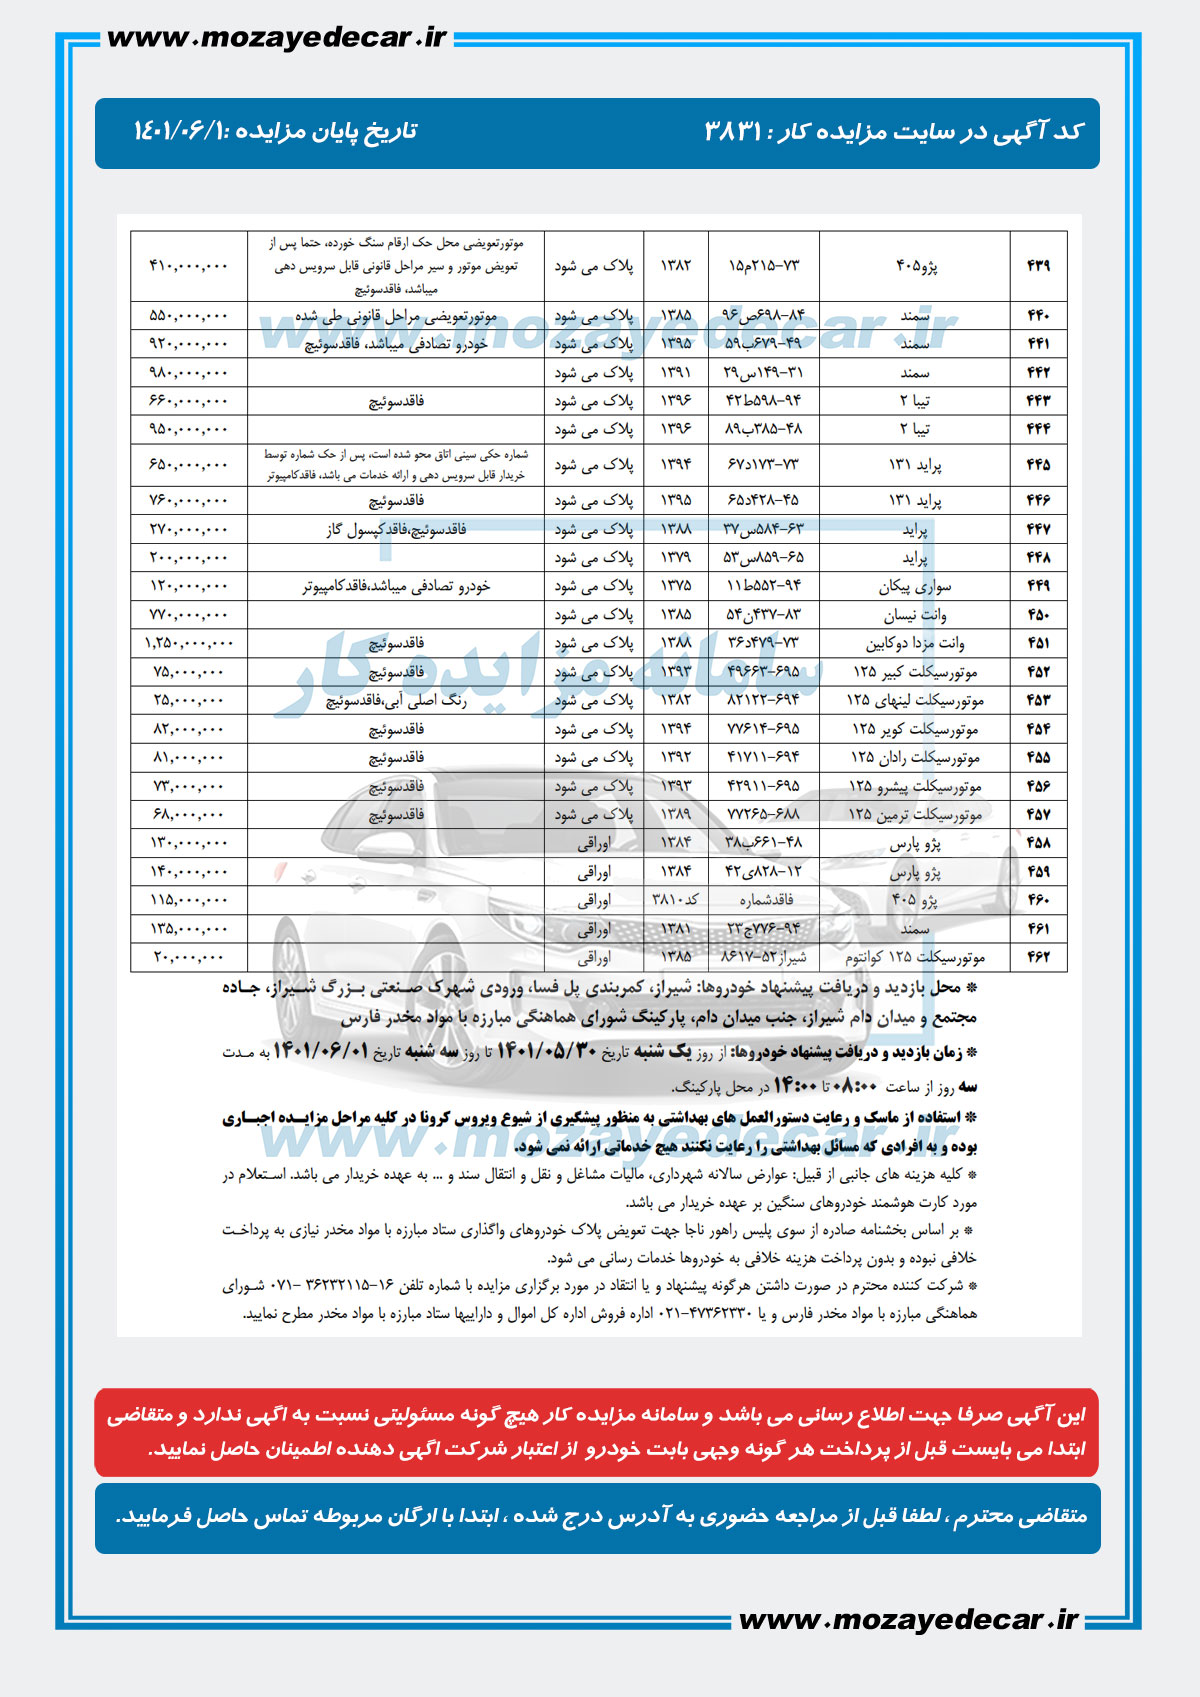 لیست قیمت مزایده شیراز